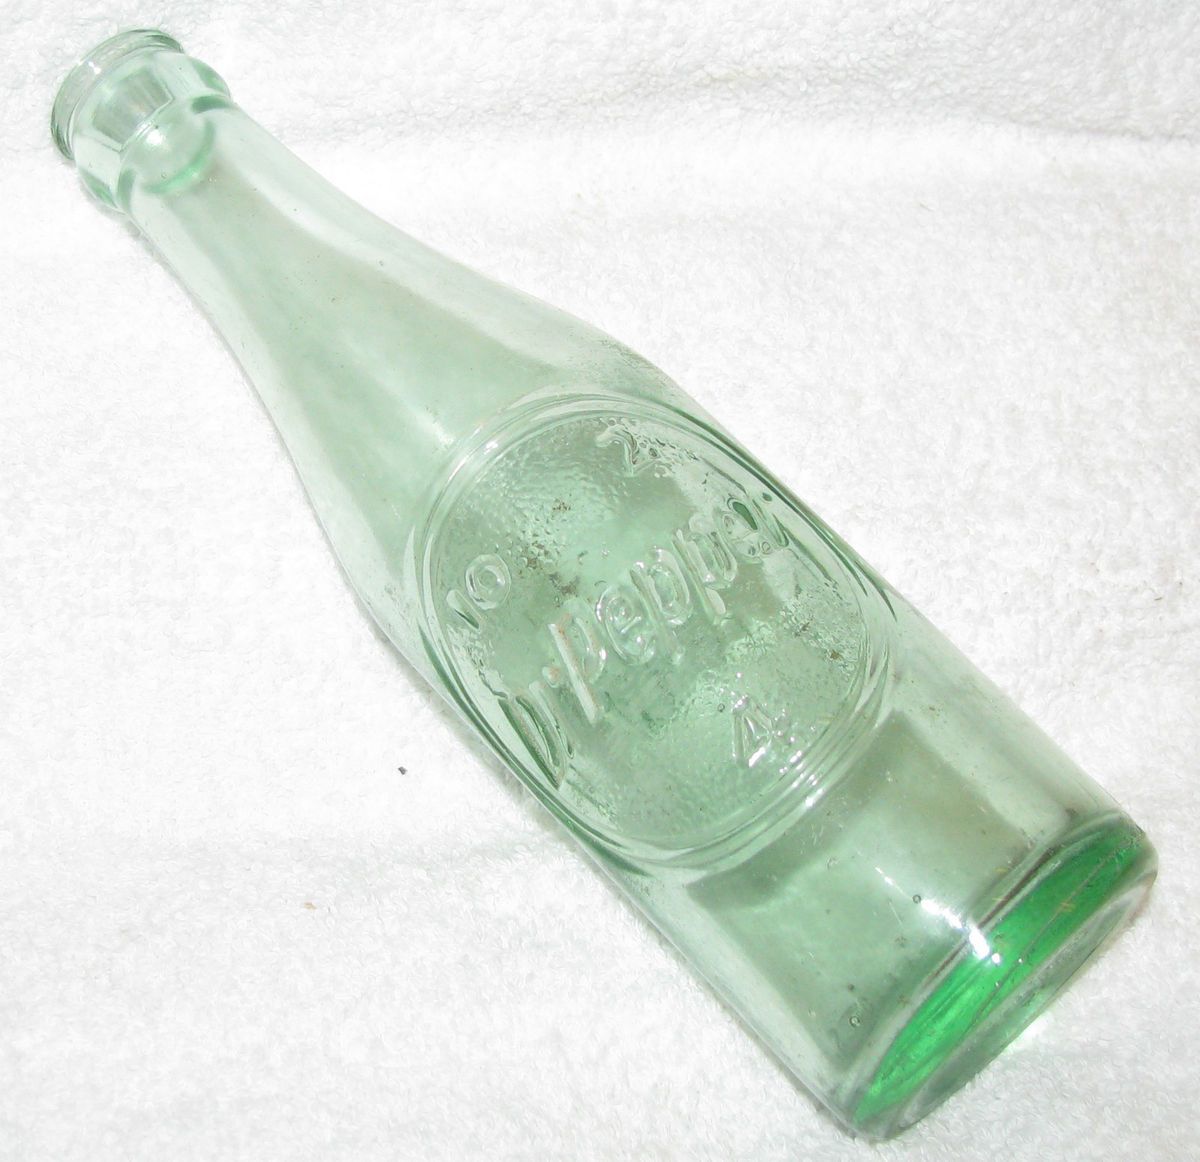 Vintage Dr Pepper Bottle